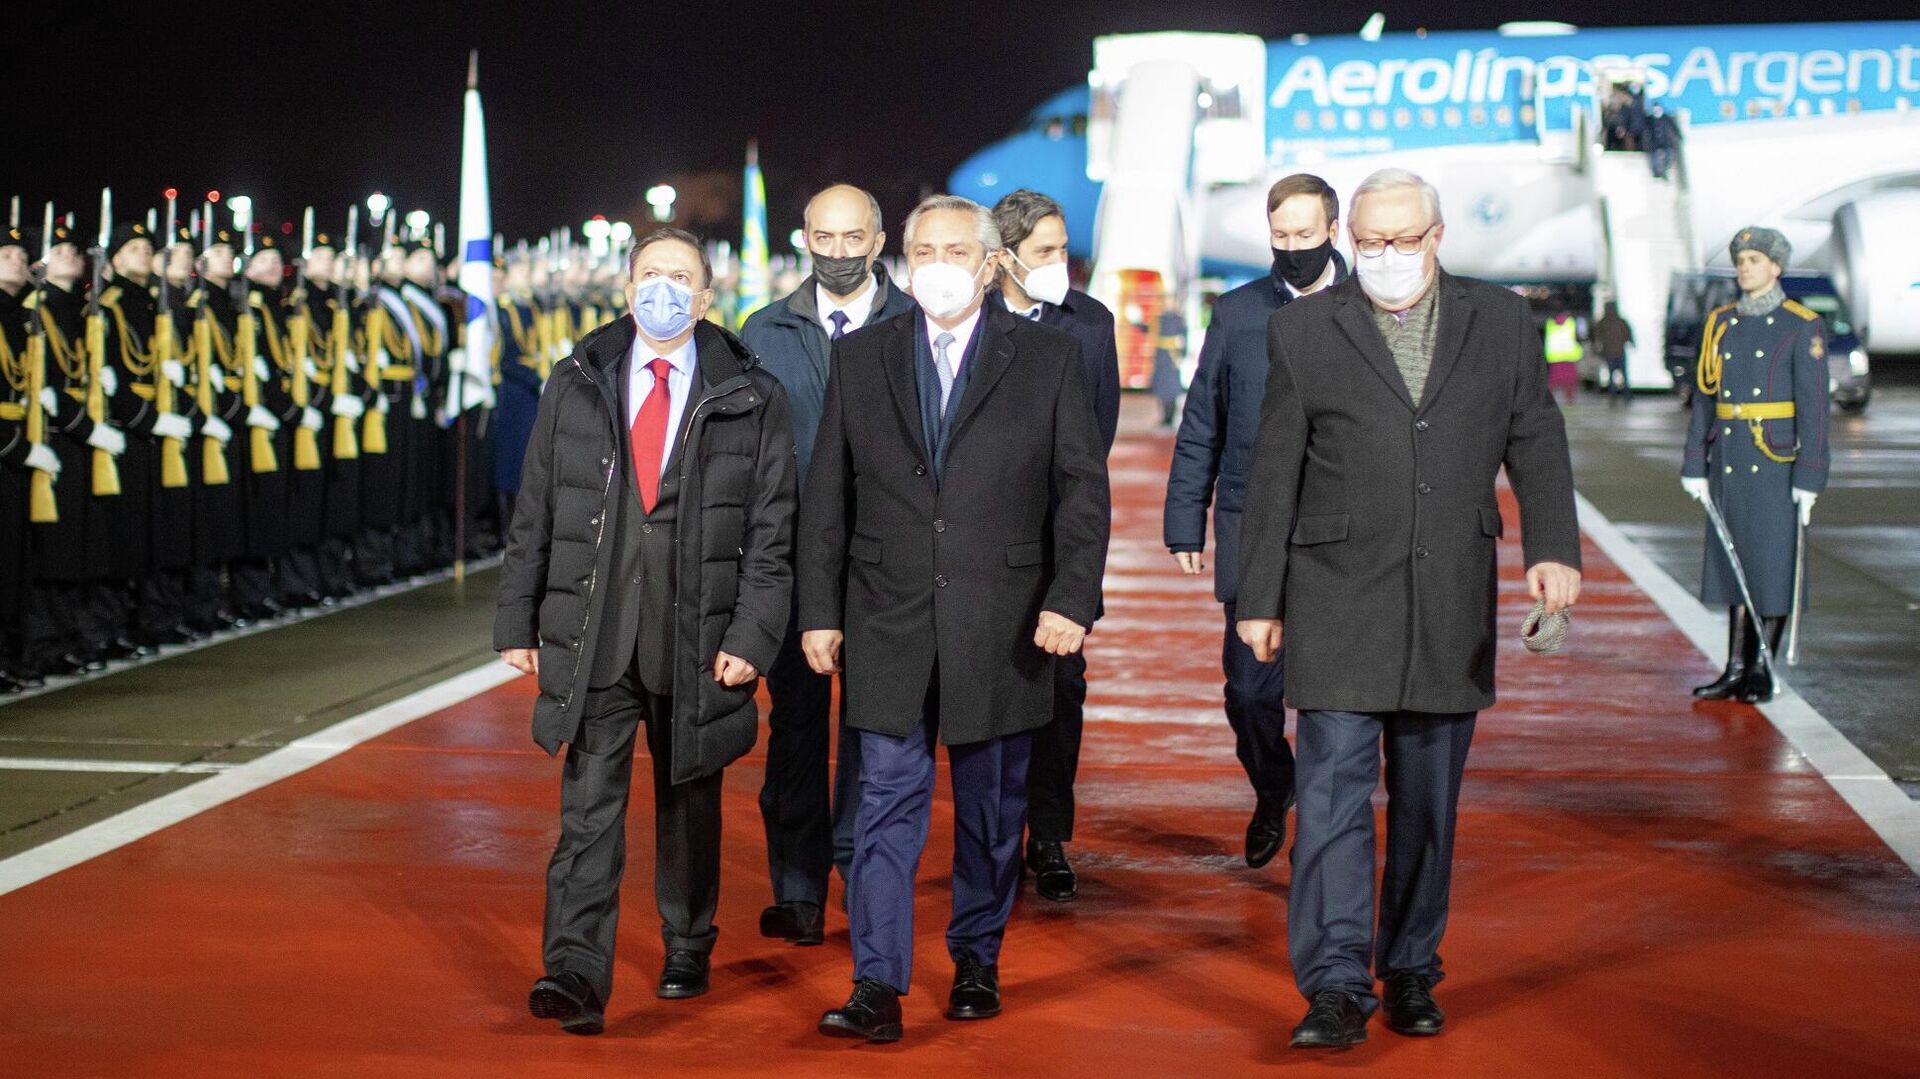 El presidente de Argentina, Alberto Fernández, llega a Moscú como parte de una gira internacional, el 2 de febrero de 2022 - Sputnik Mundo, 1920, 03.02.2022